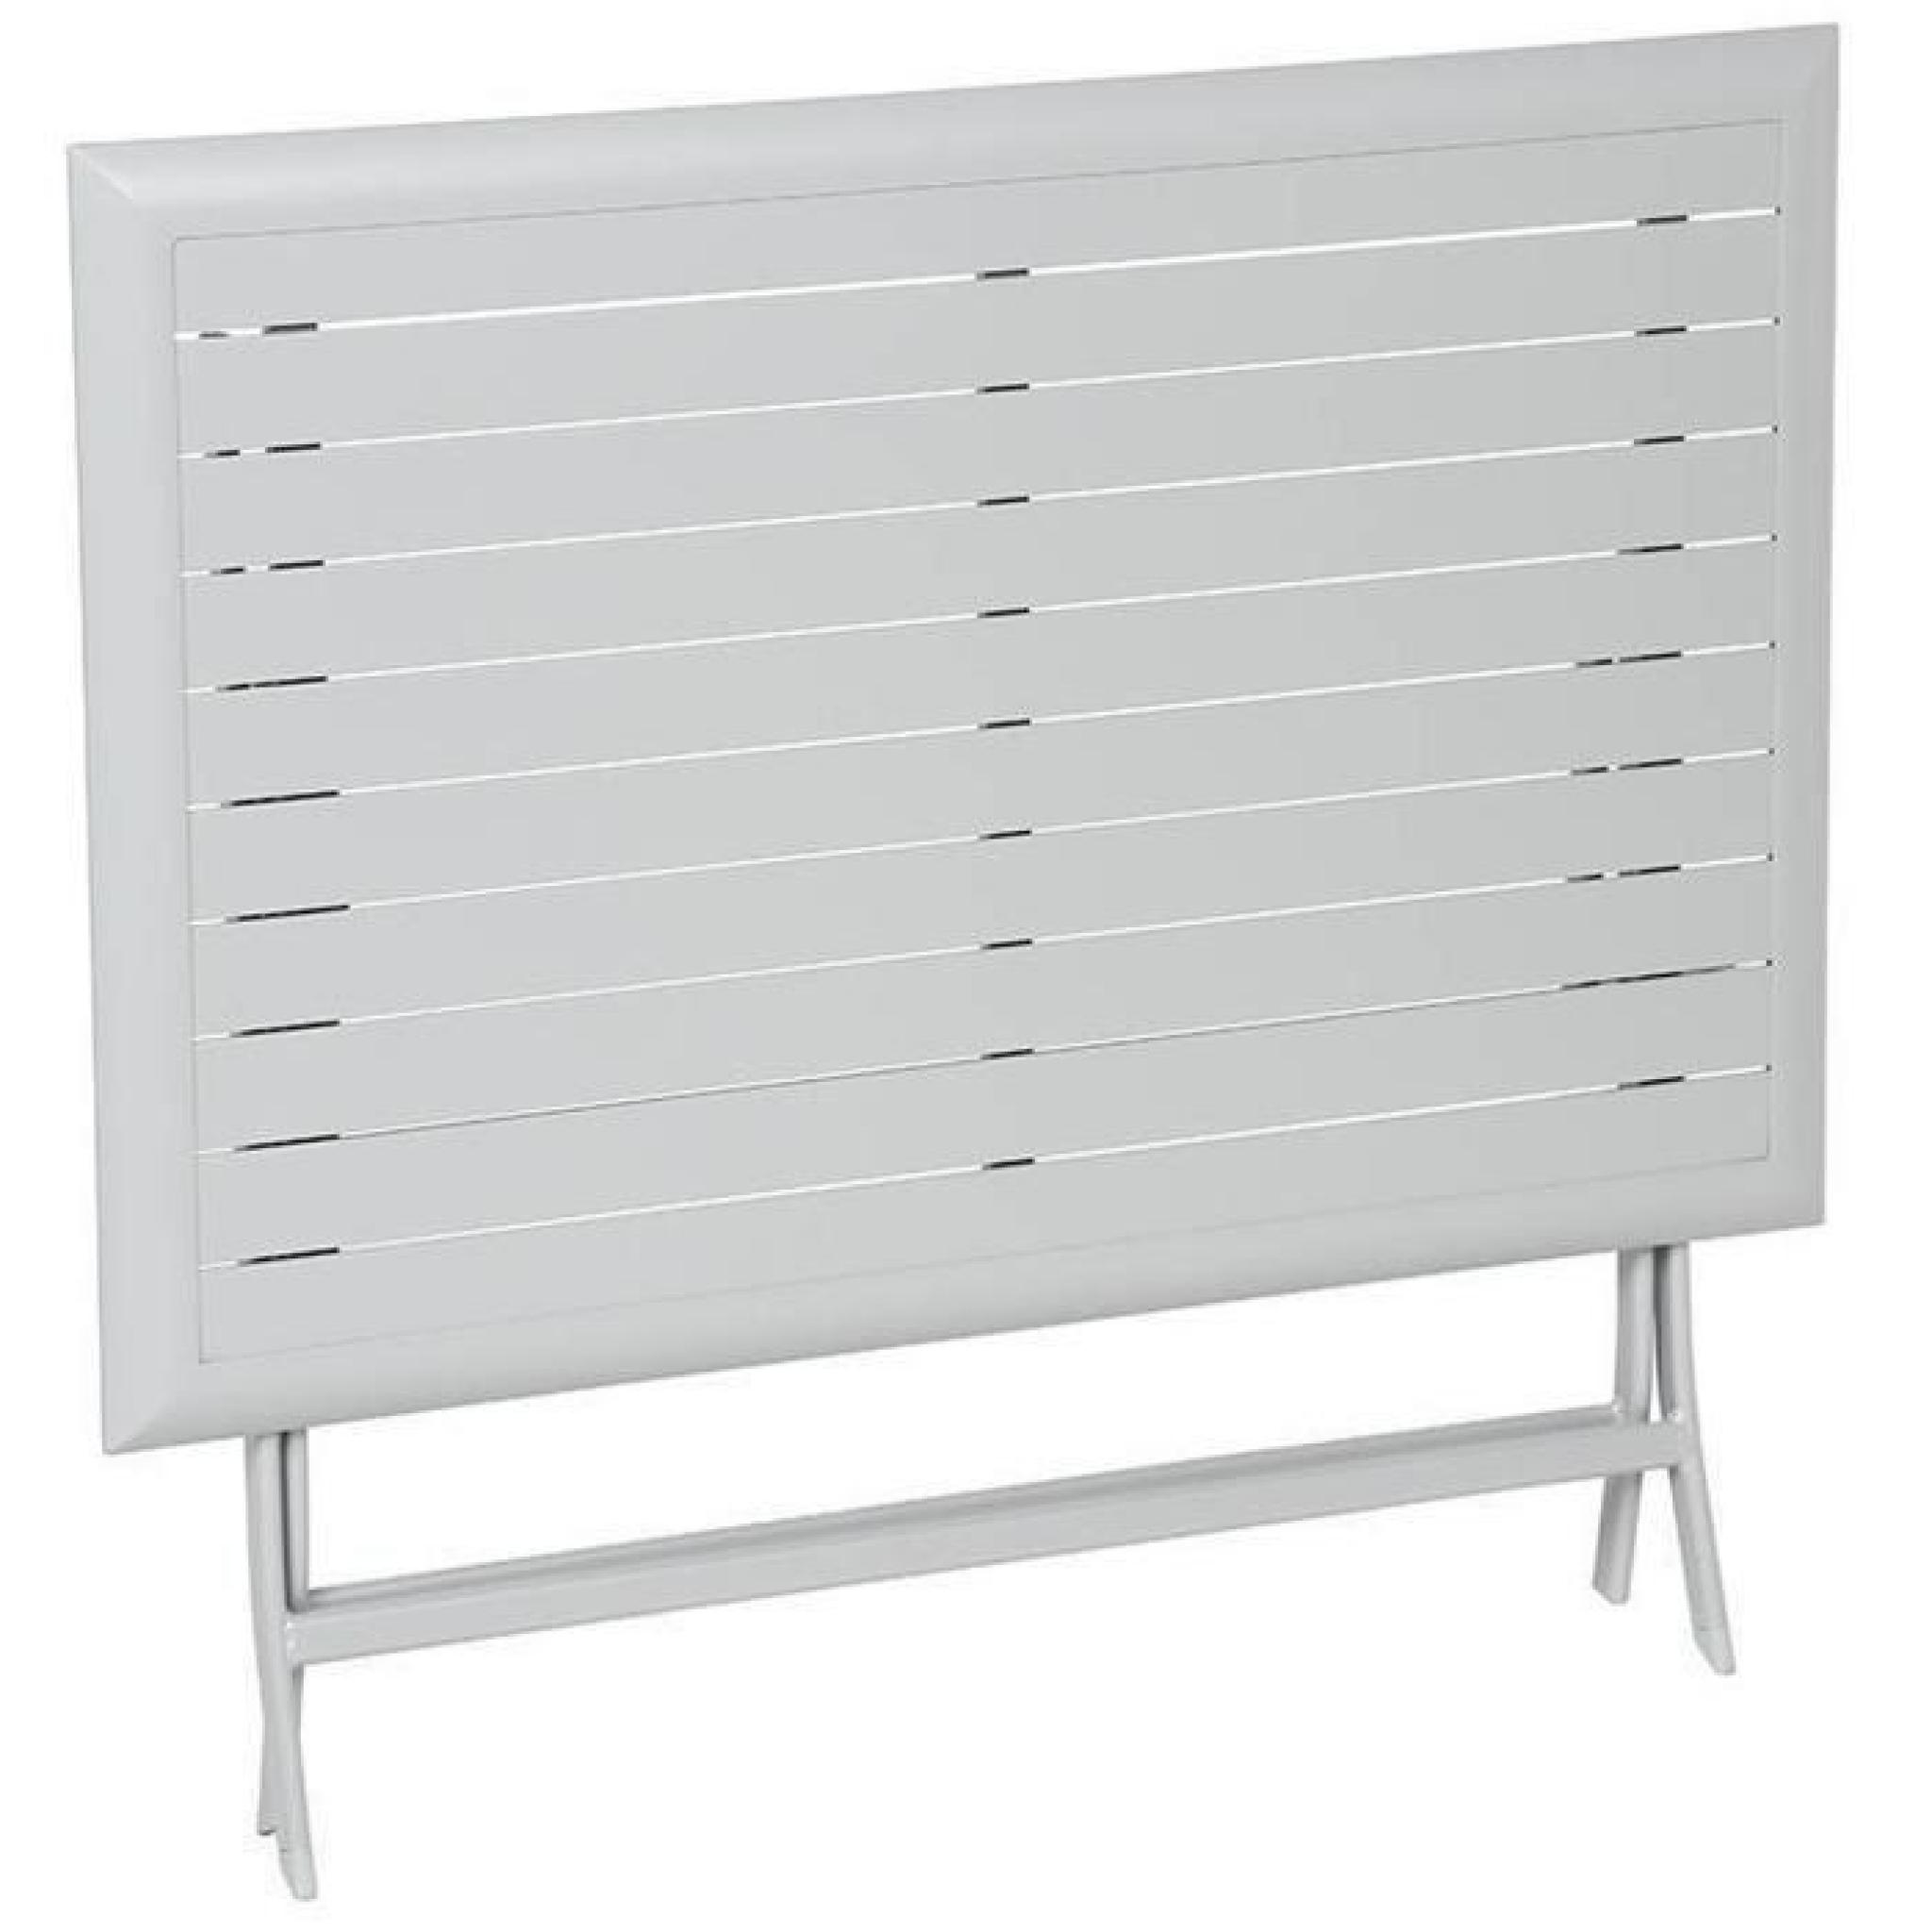 Table pliante rectangulaire en Aluminium coloris silver mat - Dim : L 110 x P 71 x H 71 cm  pas cher